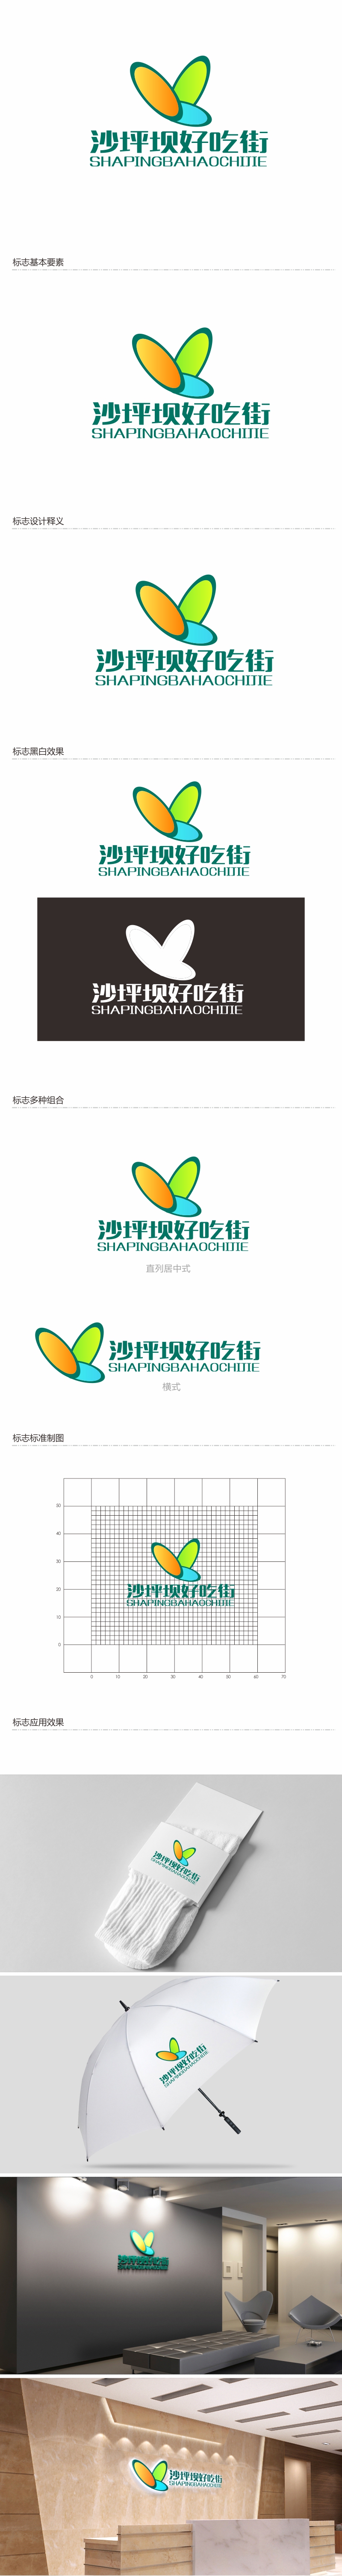 陈川的沙坪坝好吃街（重新编辑需求）logo设计